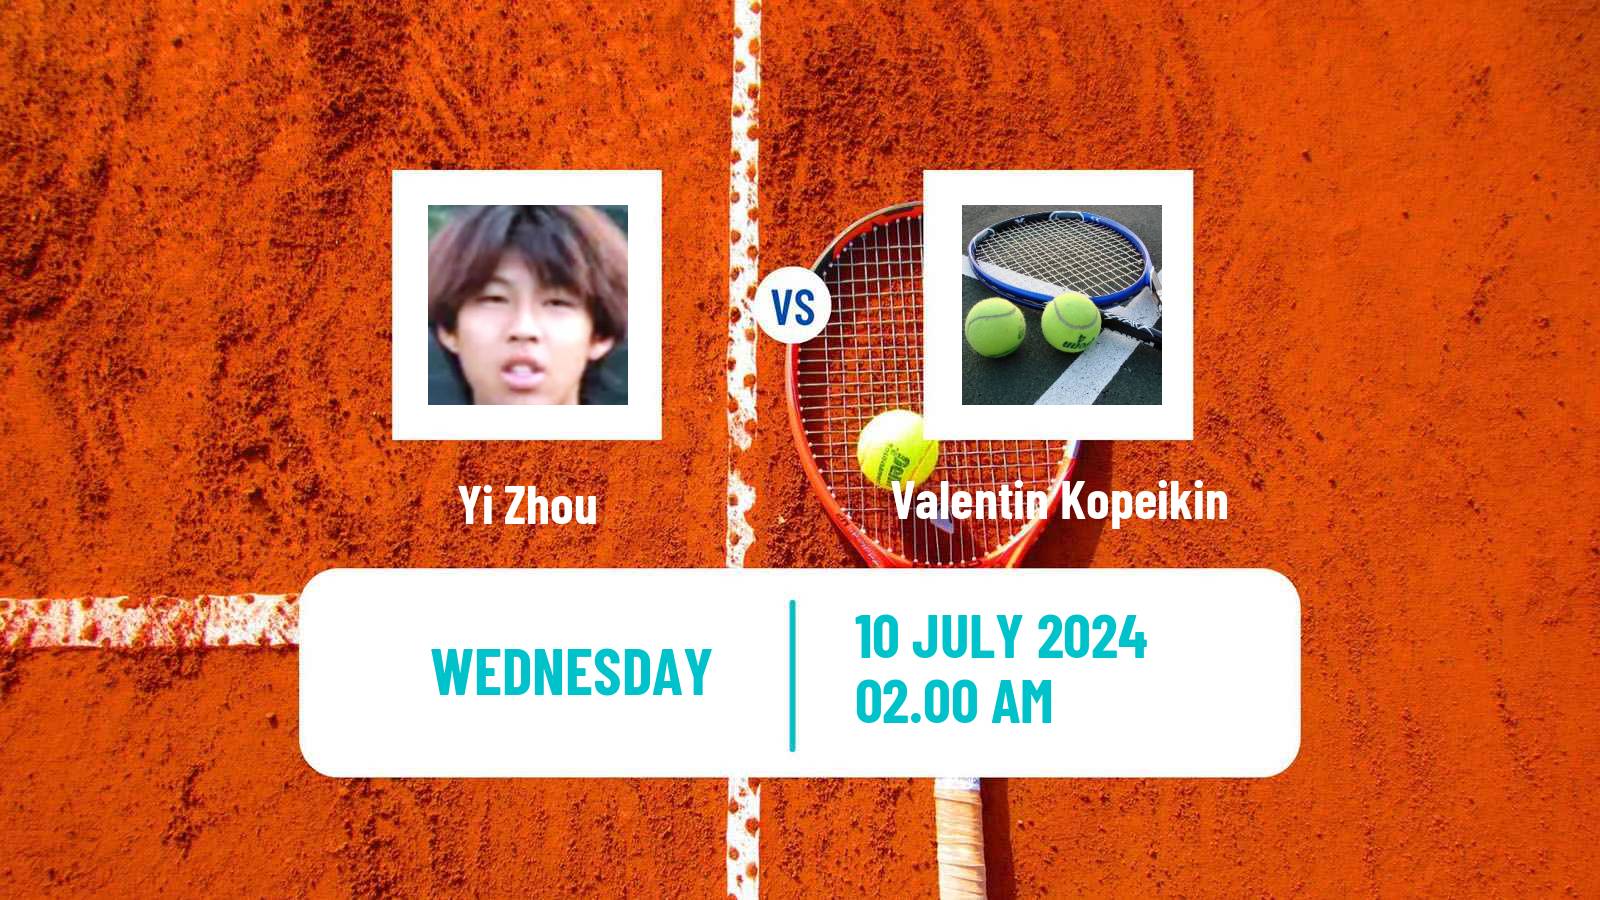 Tennis ITF M25 Tianjin Men Yi Zhou - Valentin Kopeikin